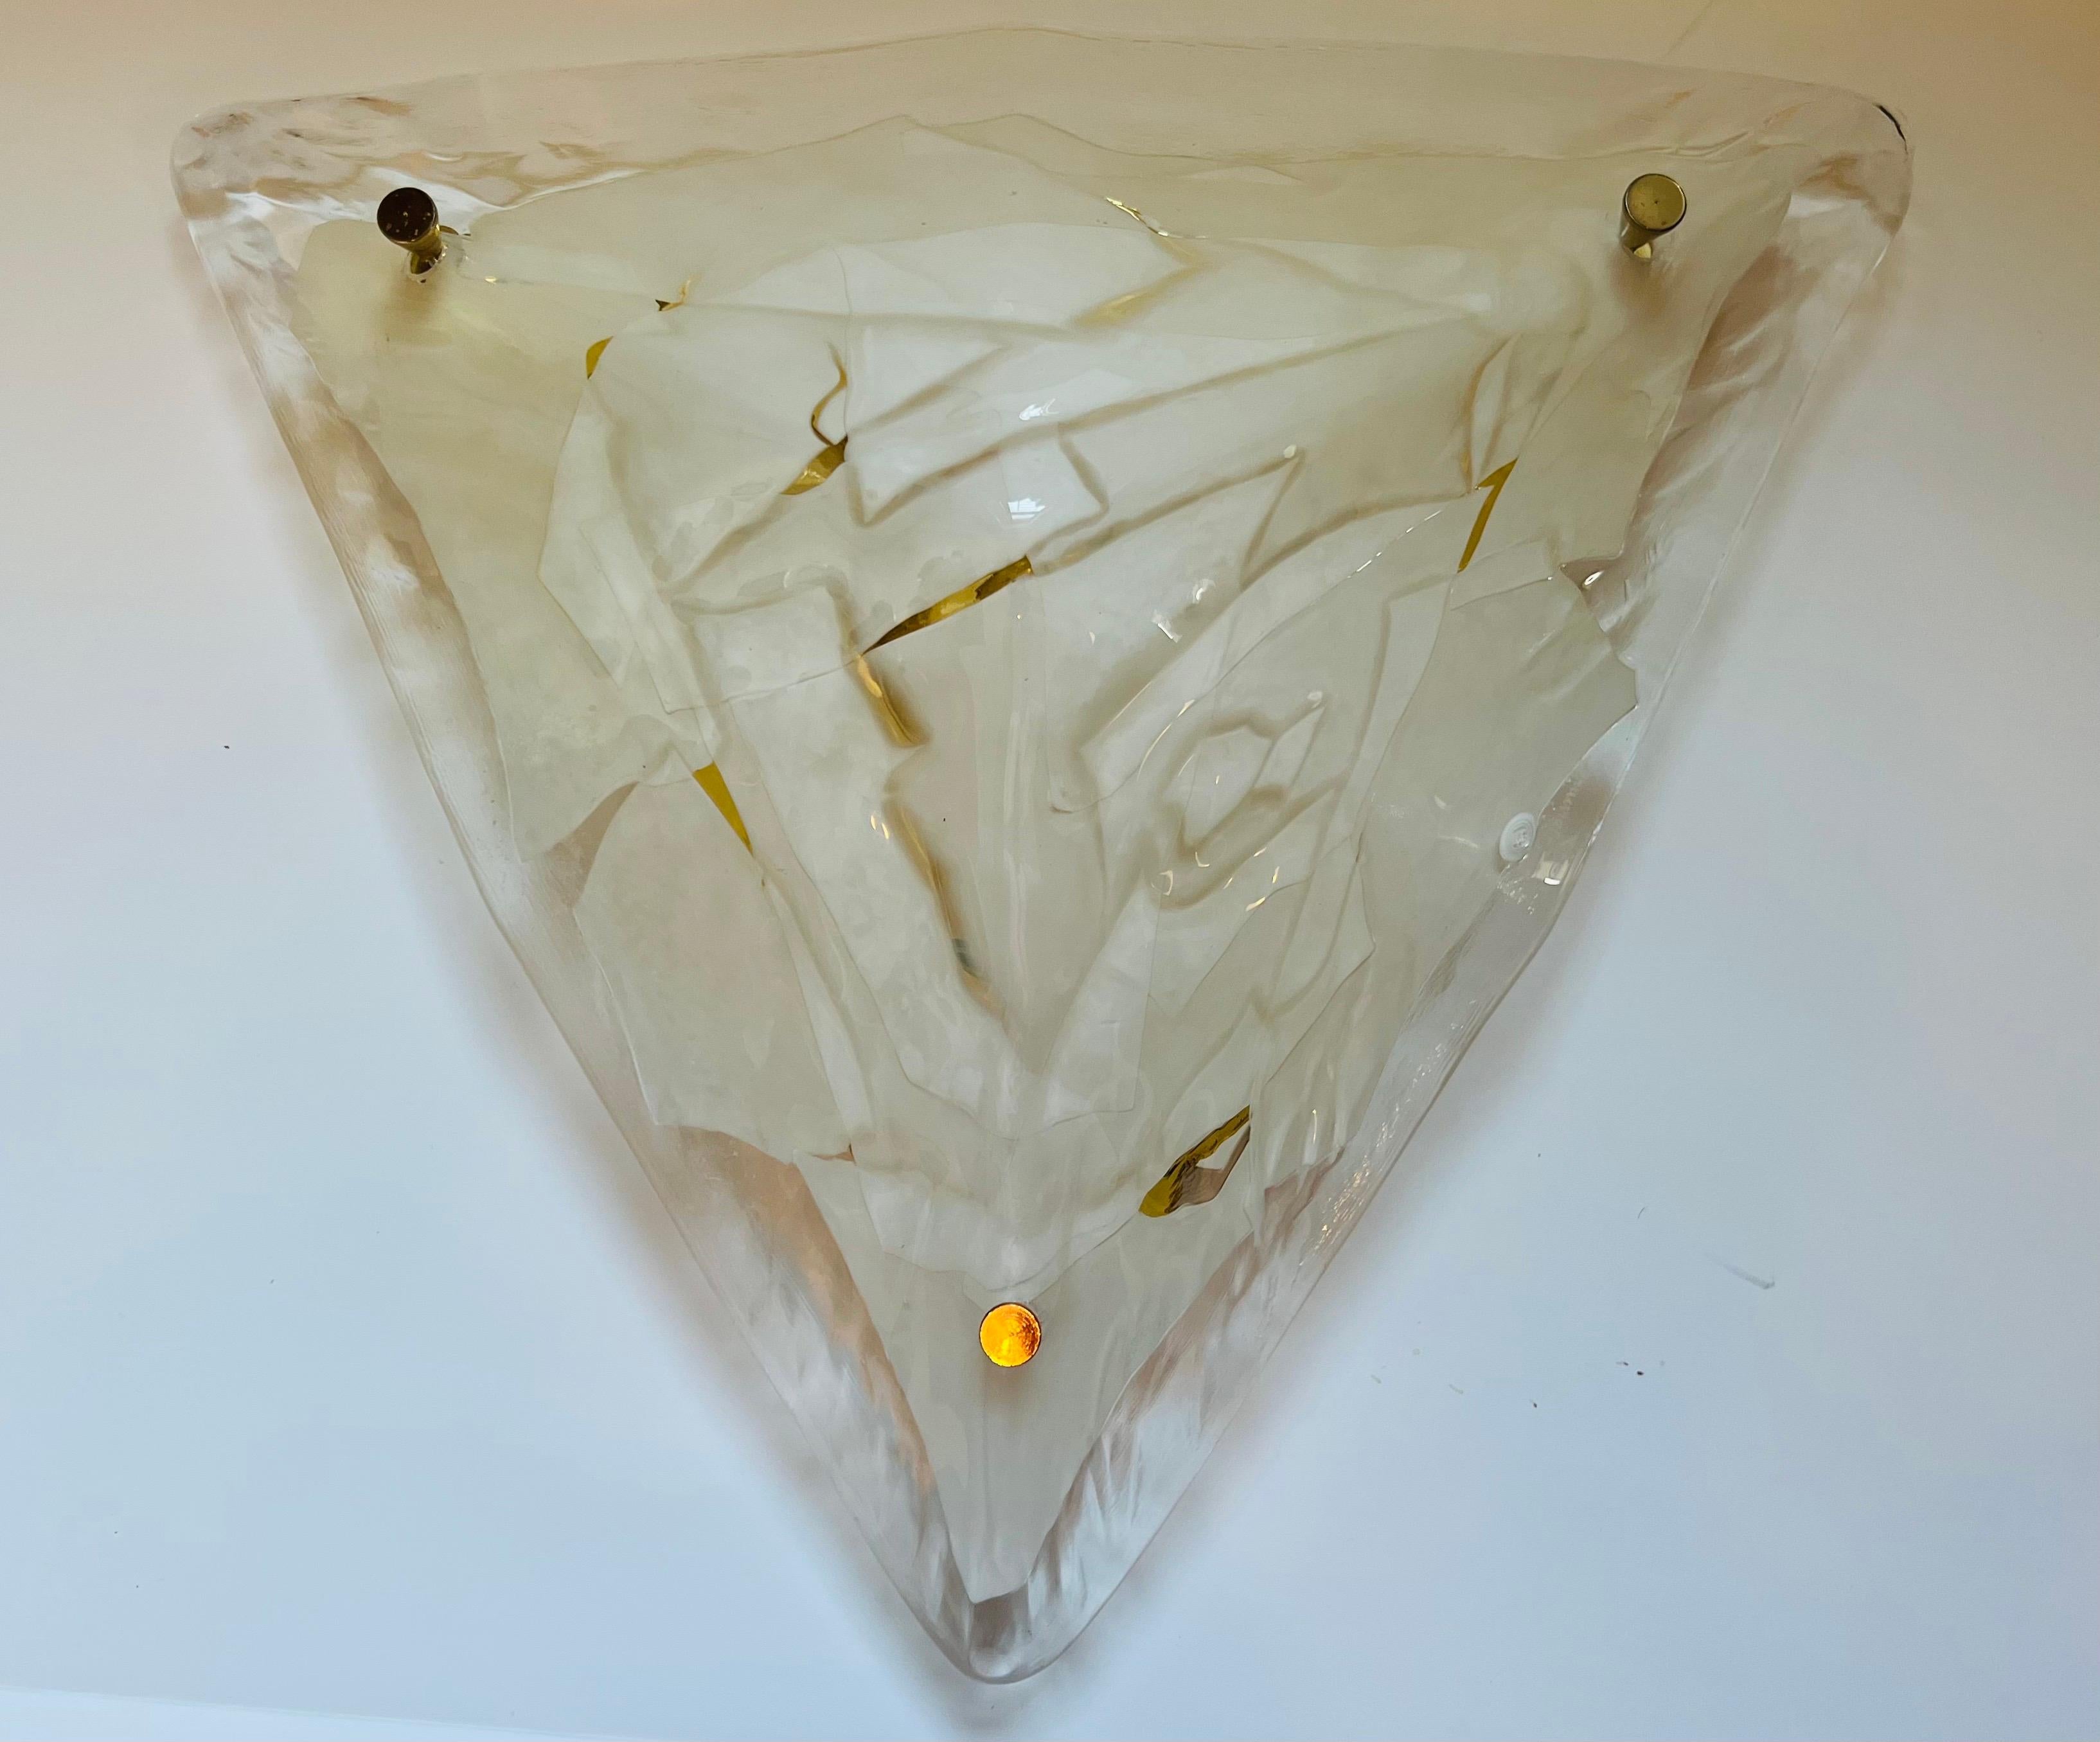 Pyramide triangulaire en verre de Murano soufflé à la main, transparente et blanche, avec raccord en or. Fabriqué par La Murrumbidgee 1980. Fixation en laiton doré. Je suis reconnecté. Trois prises candélabres. Signé.